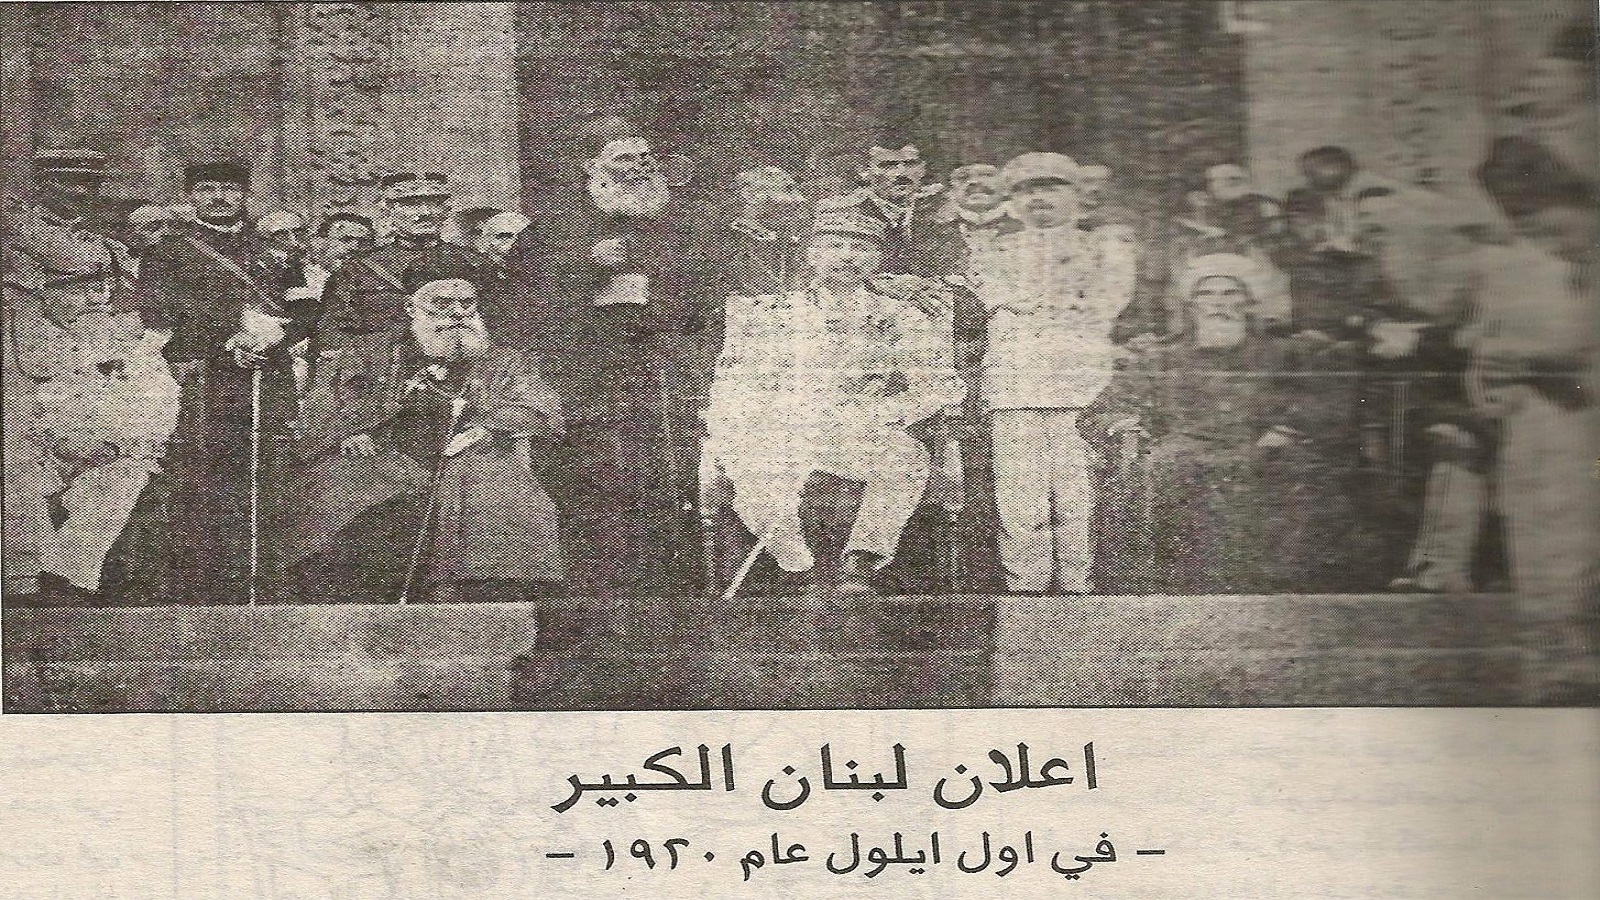 اعلان لبنان الكبير، 1920.